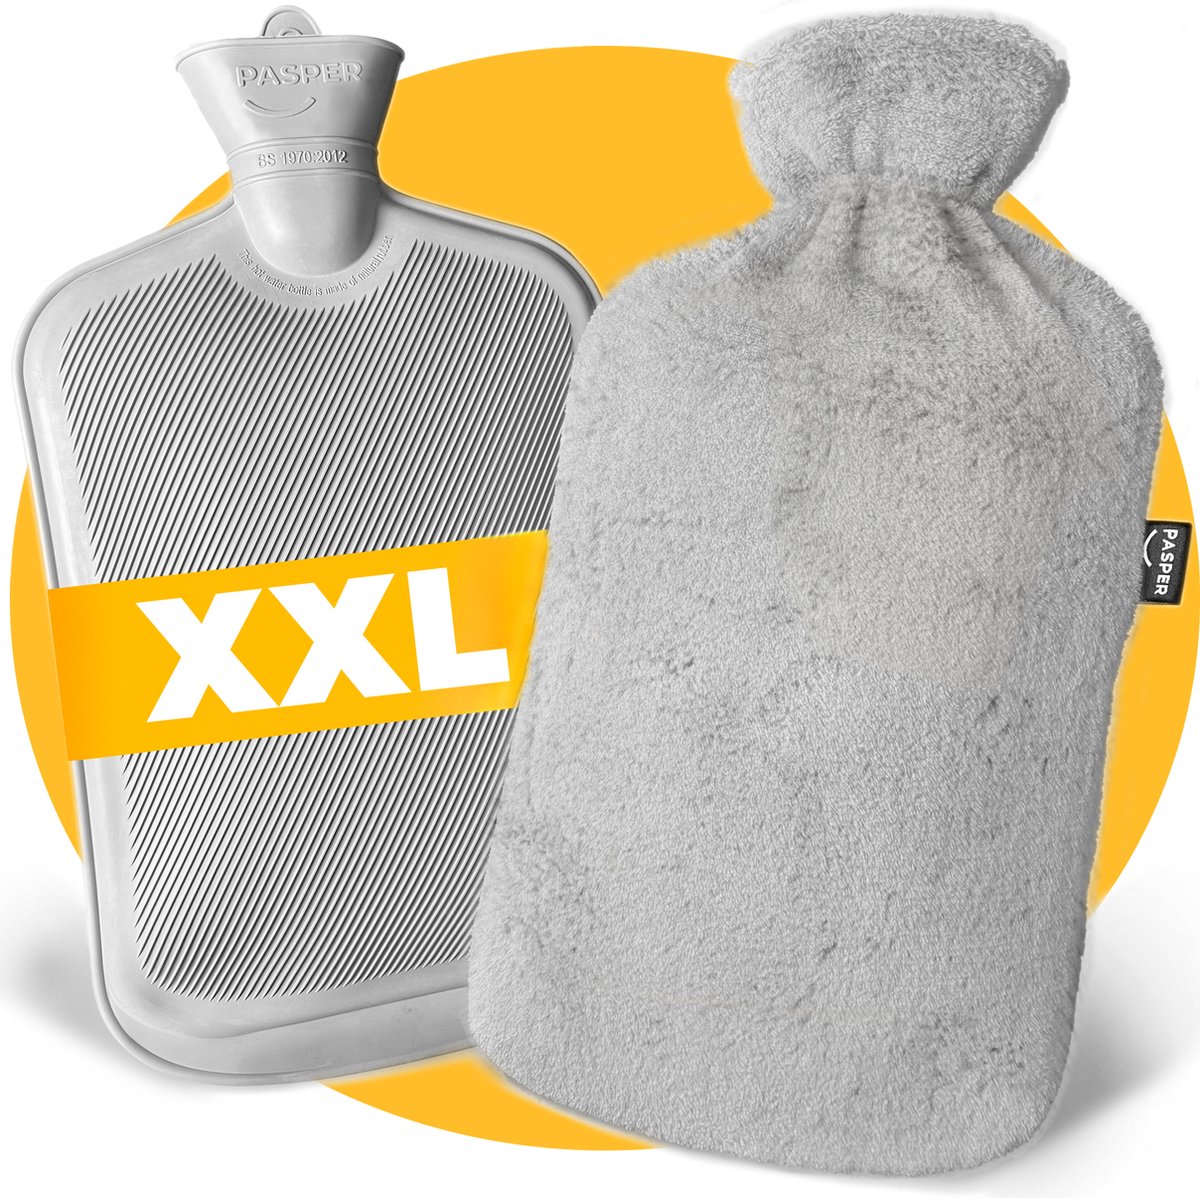 XXL kruik met hoes 3,5 liter - Pasper warmwaterkruik - 8 uur warmte - grijs - kruikzak - cadeau voor vrouw, vriendin en verjaardag - moederdag cadeautje - Pasper